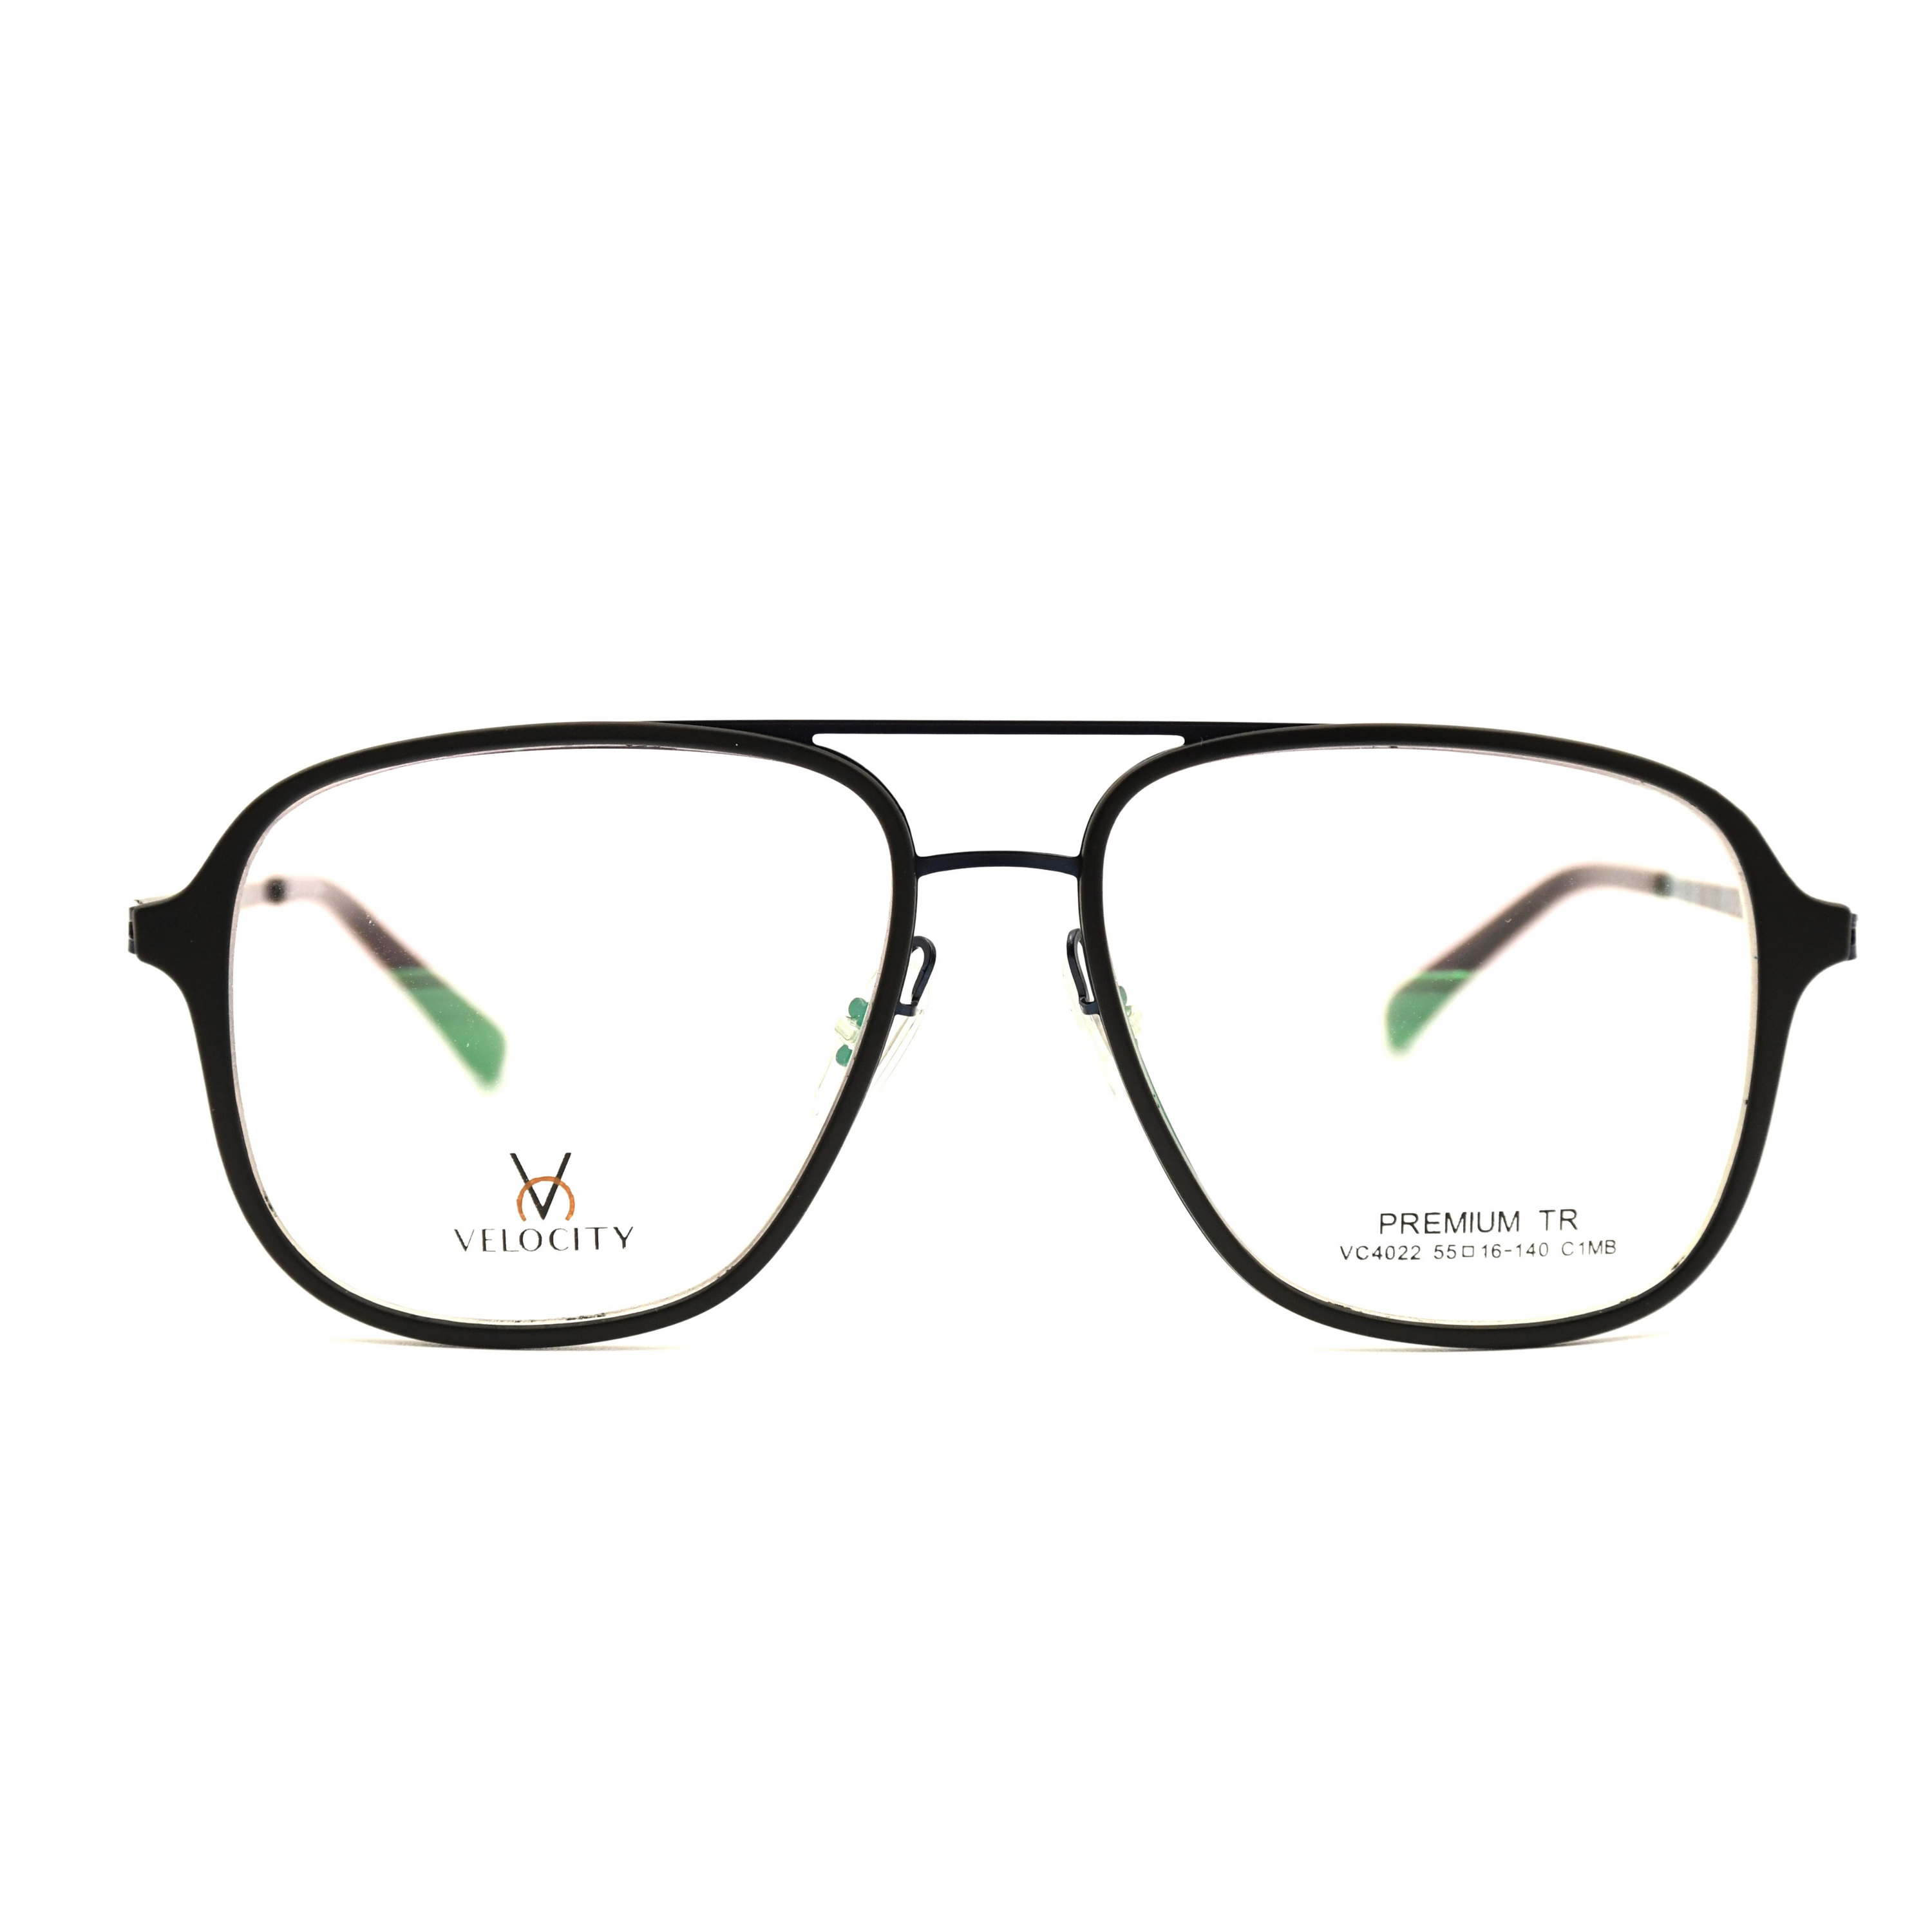 Velocity Rectangle Full Rim Eyeglasses - 4022-C1MB